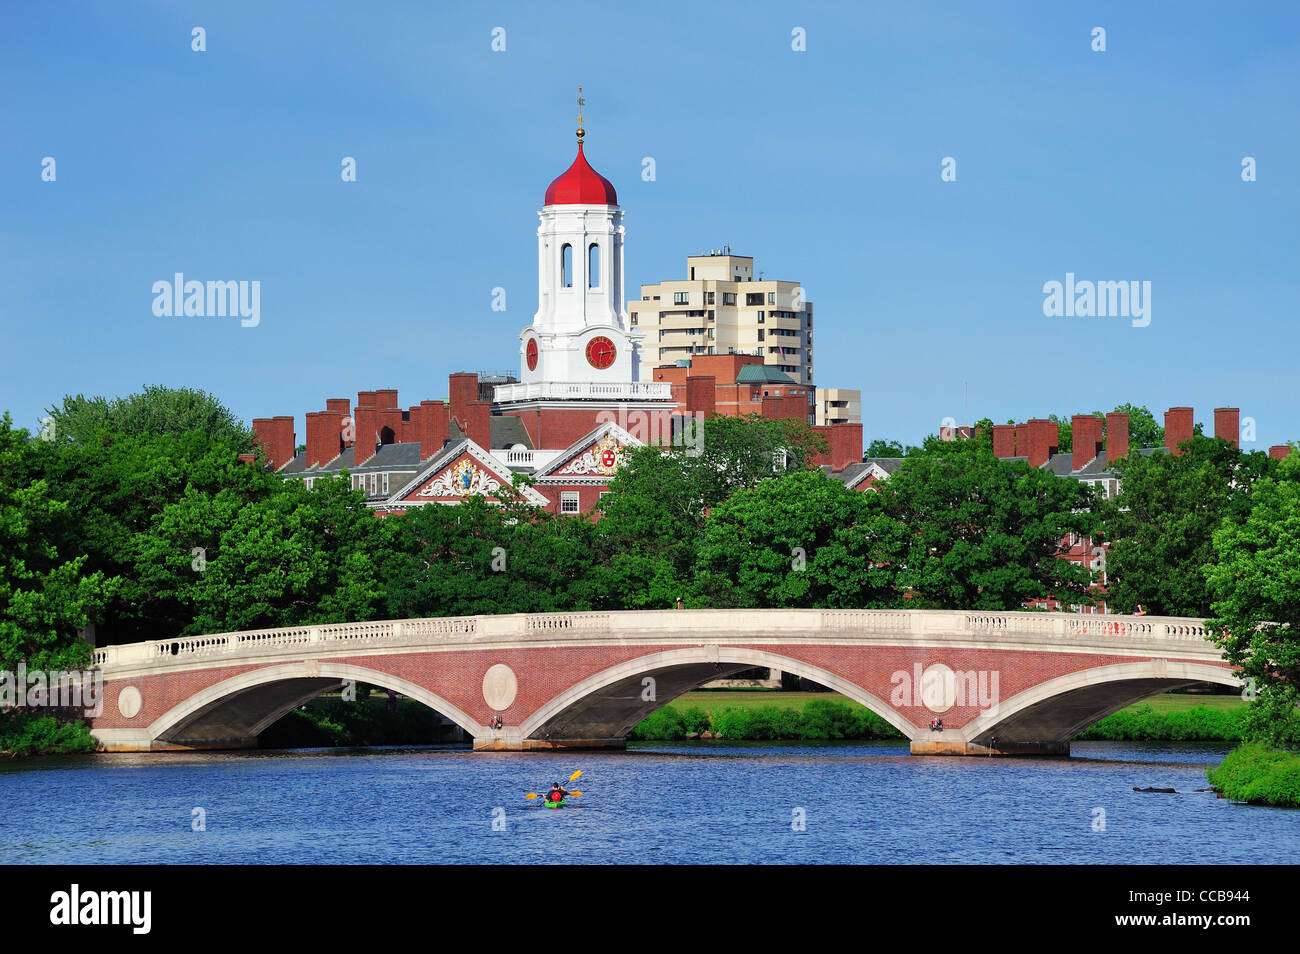 John W. Settimane Bridge e torre dell orologio su Charles River in Harvard University campus a Boston con alberi, barca e cielo blu. Foto Stock